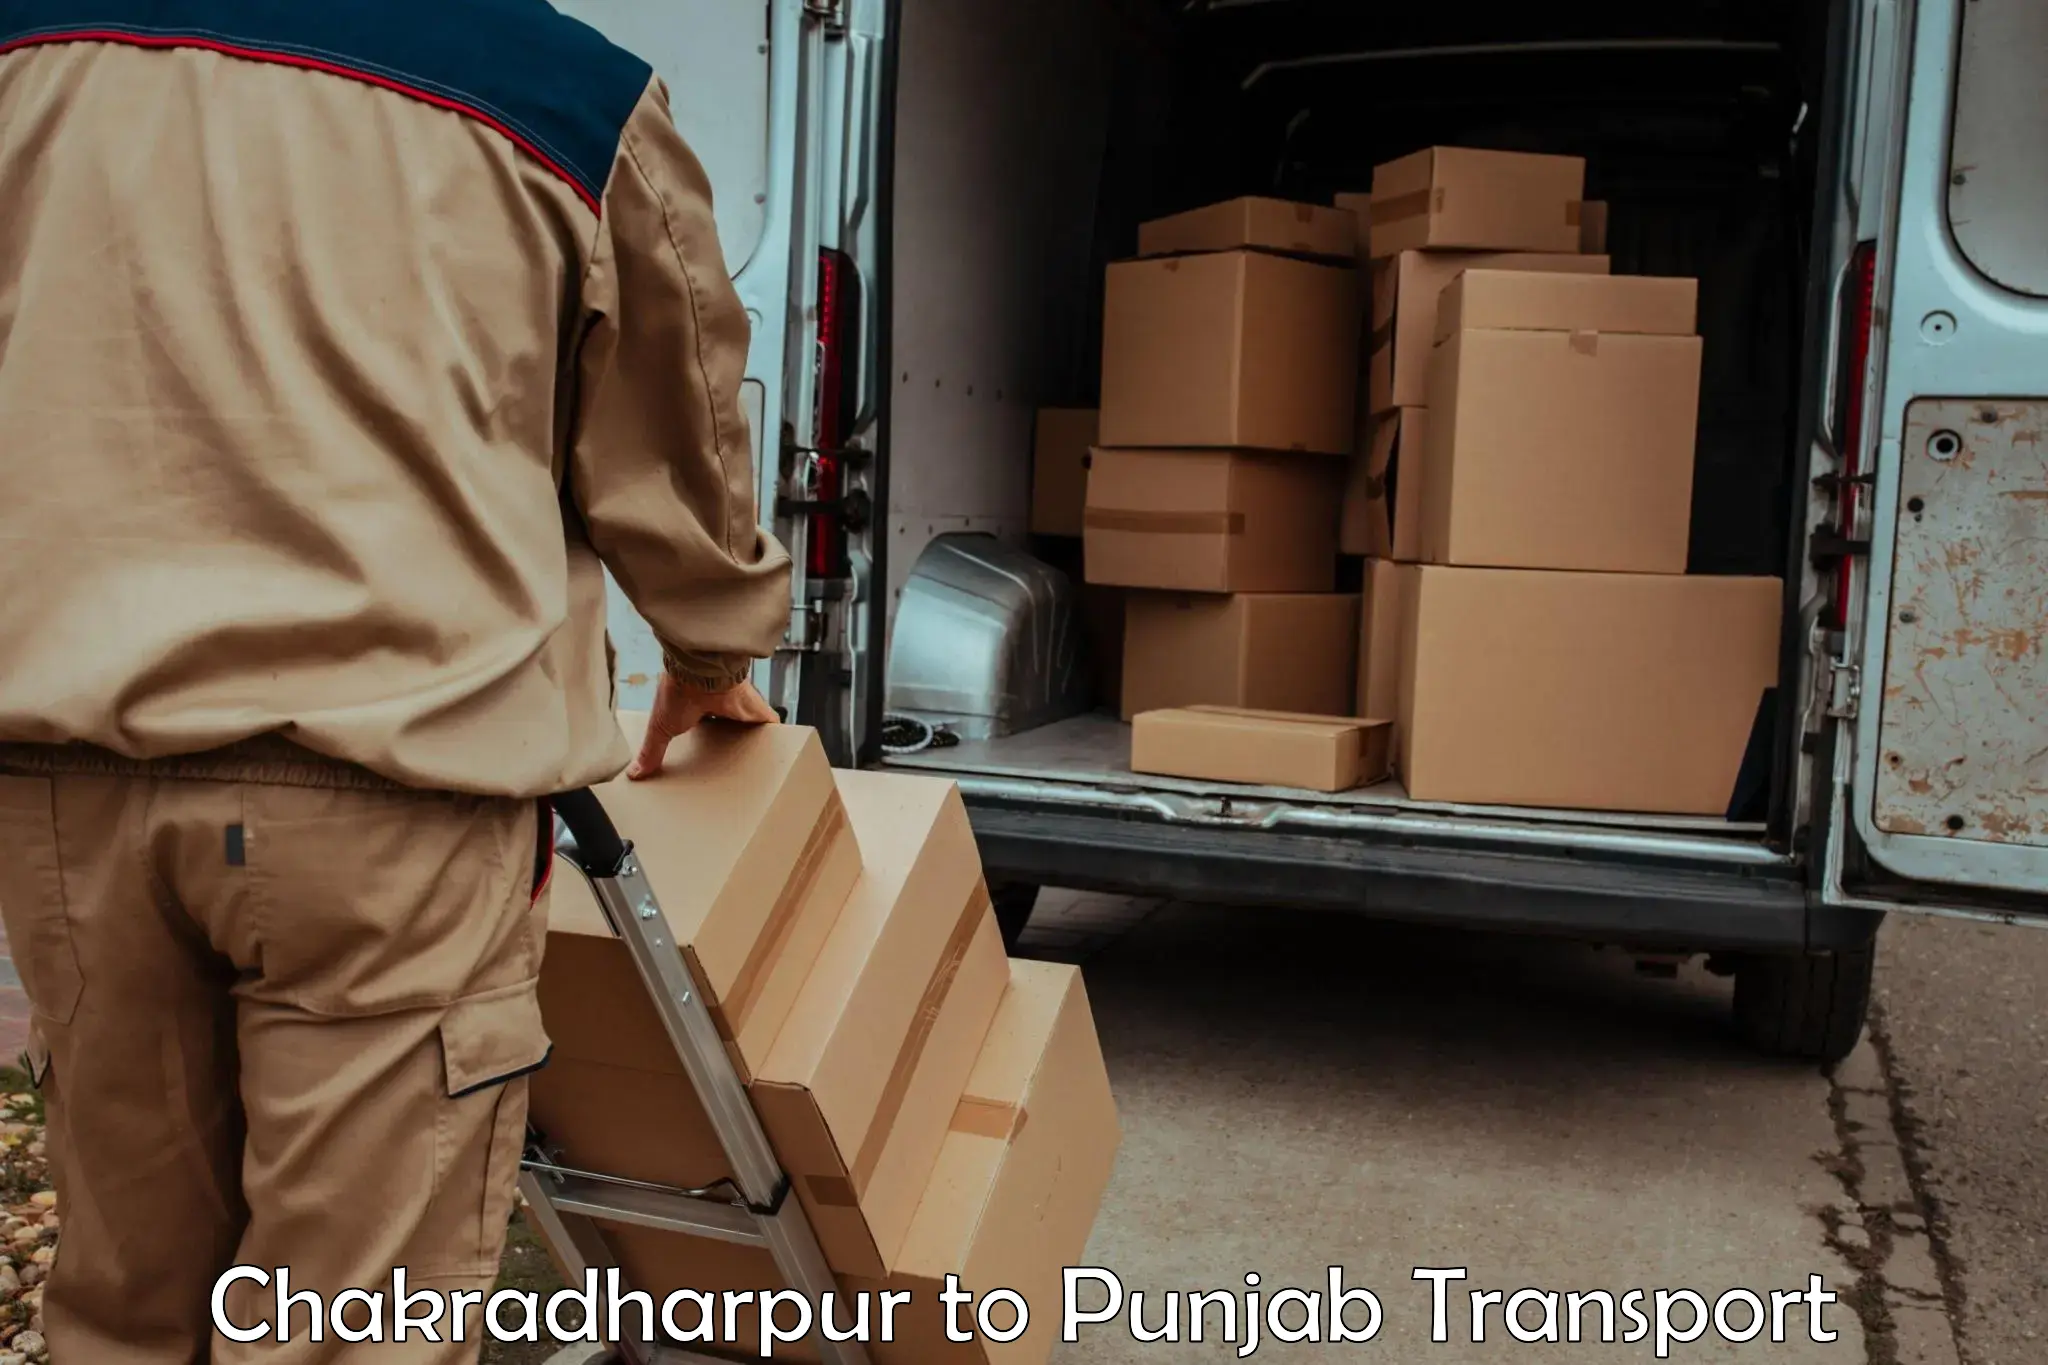 Bike shipping service Chakradharpur to Punjab